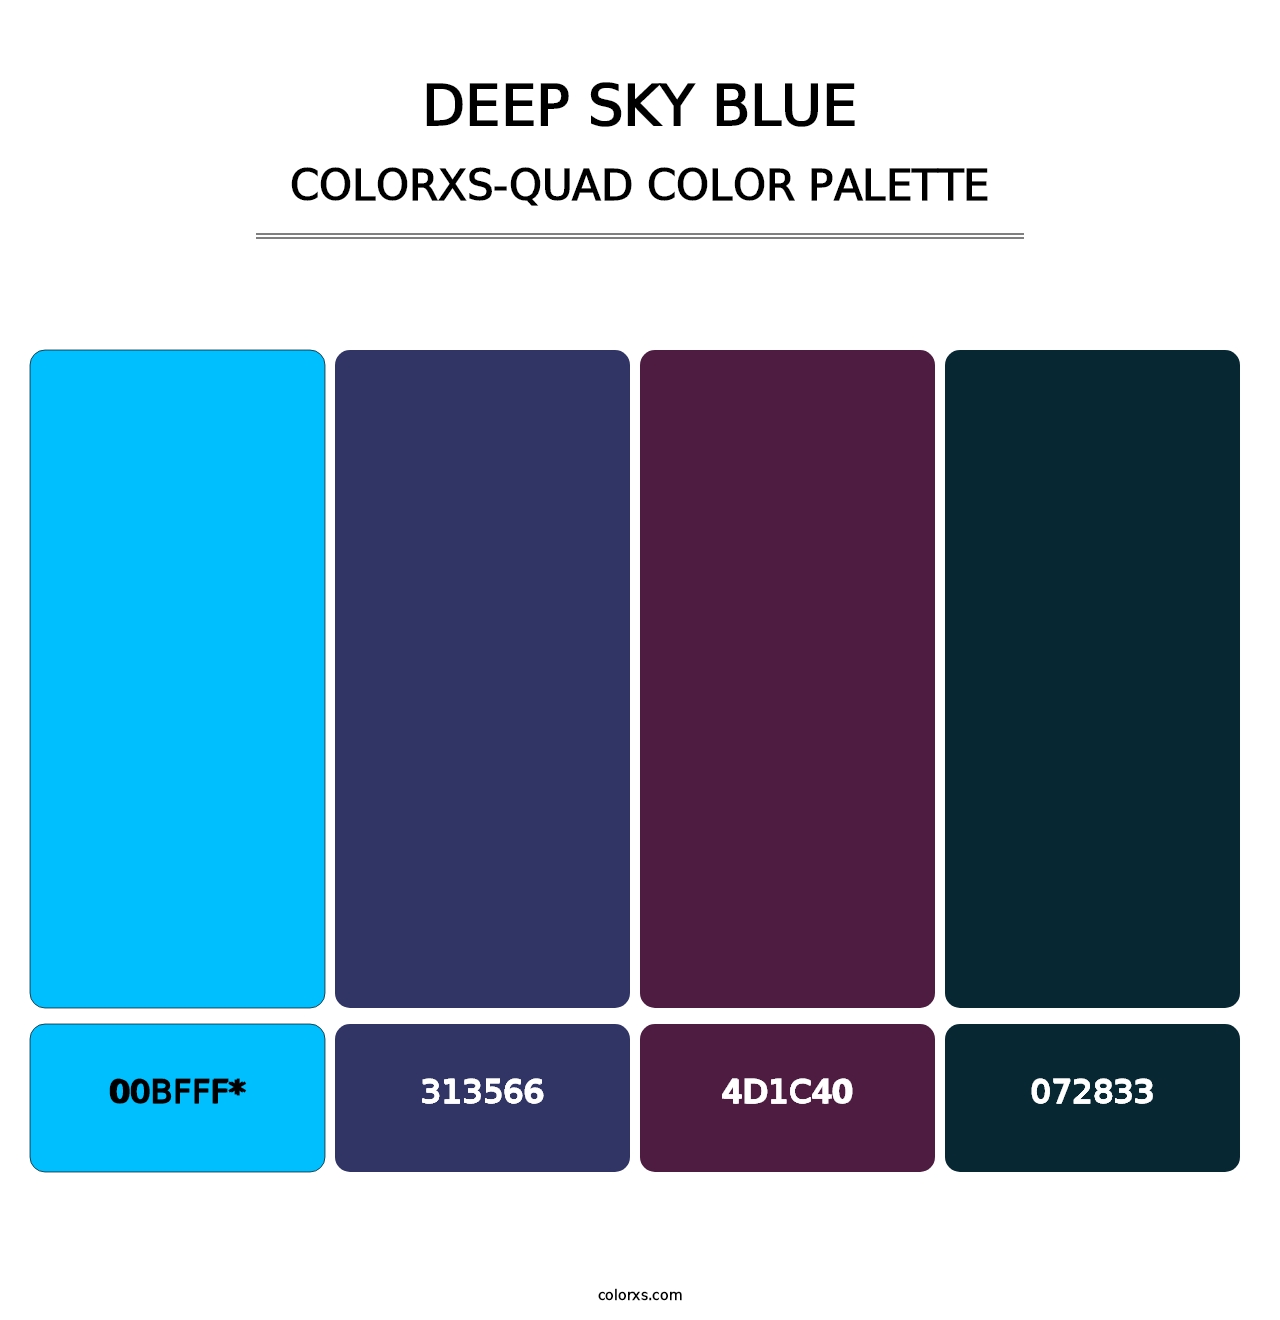 Deep Sky Blue - Colorxs Quad Palette